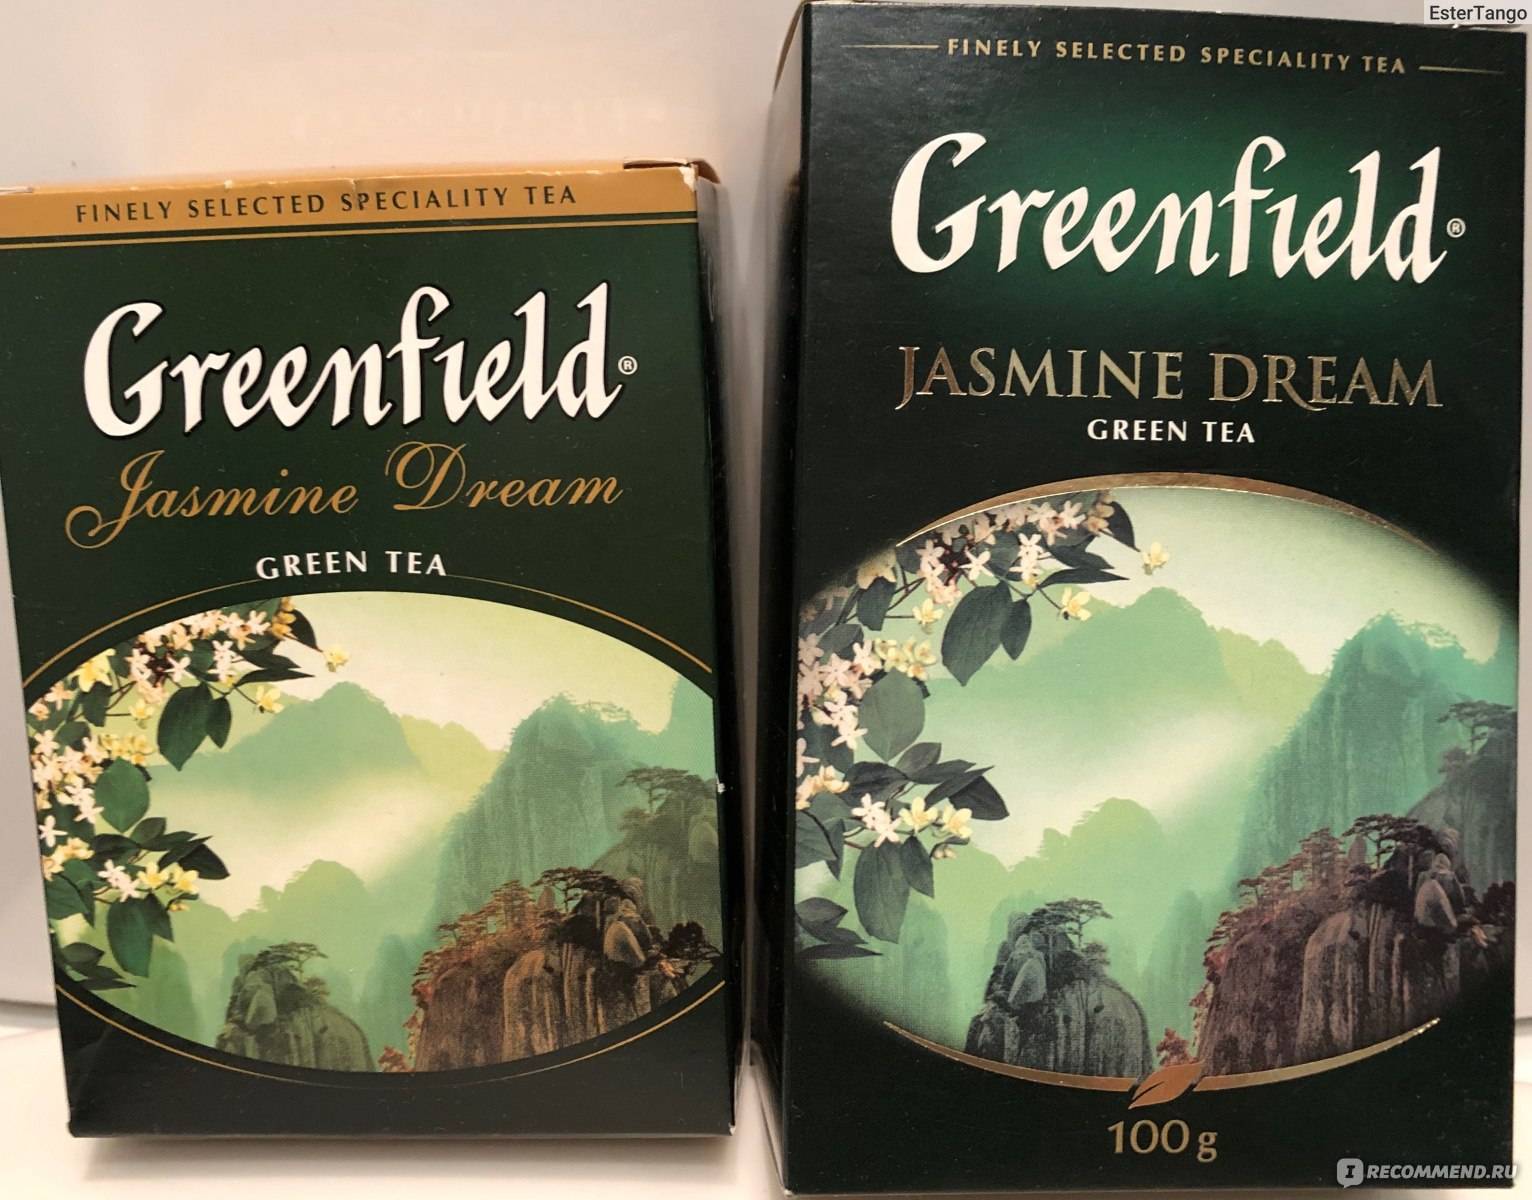 Какой чай лучше пить: черный или зеленый? подробный обзор сортов и их особенностей